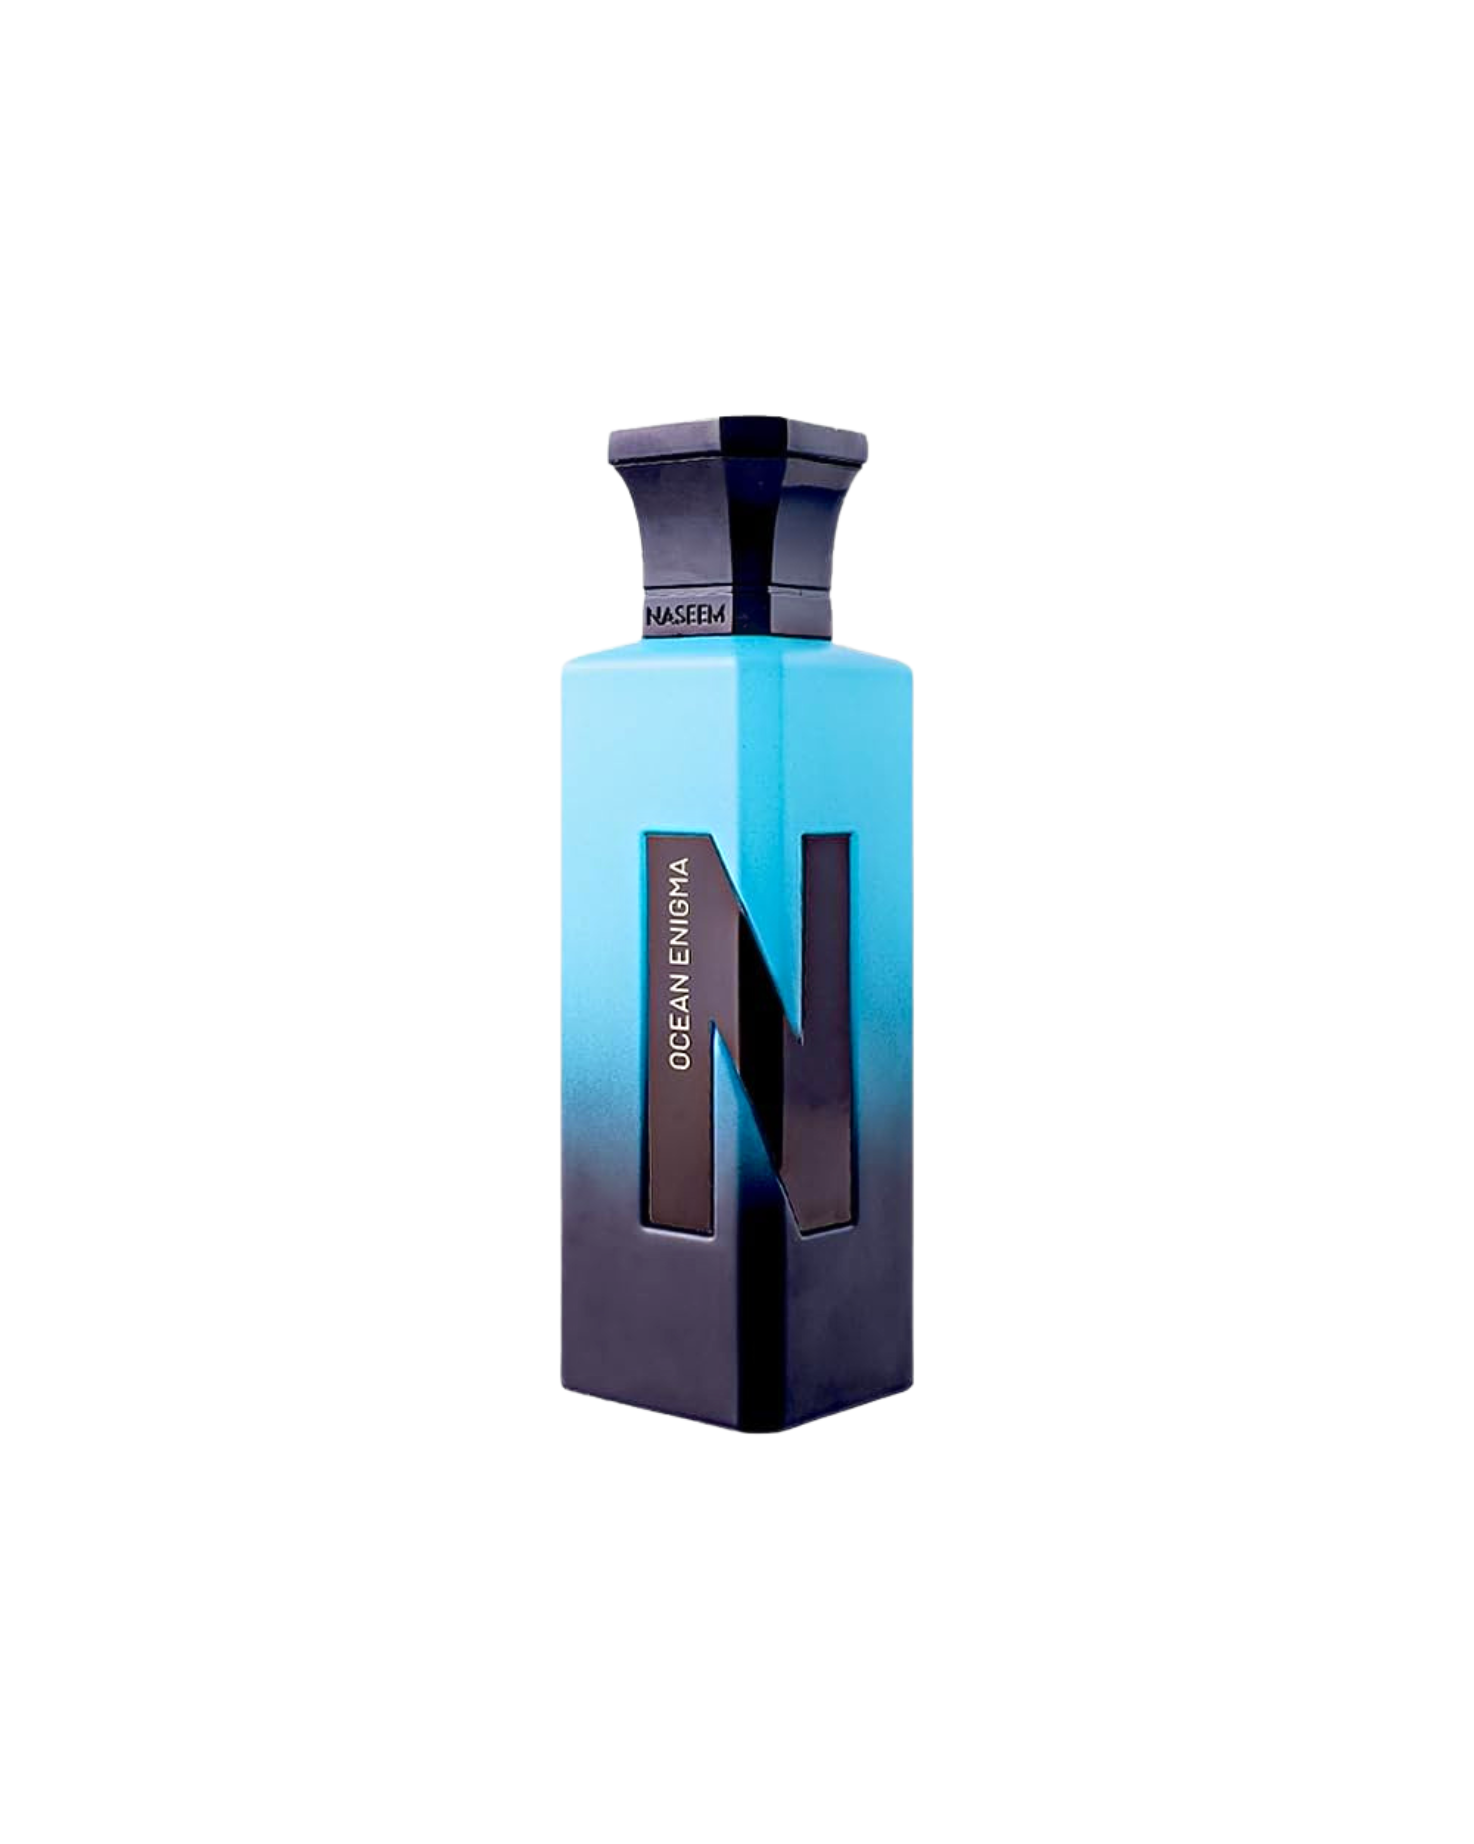 ocean-enigma-aqua-perfume-bottle